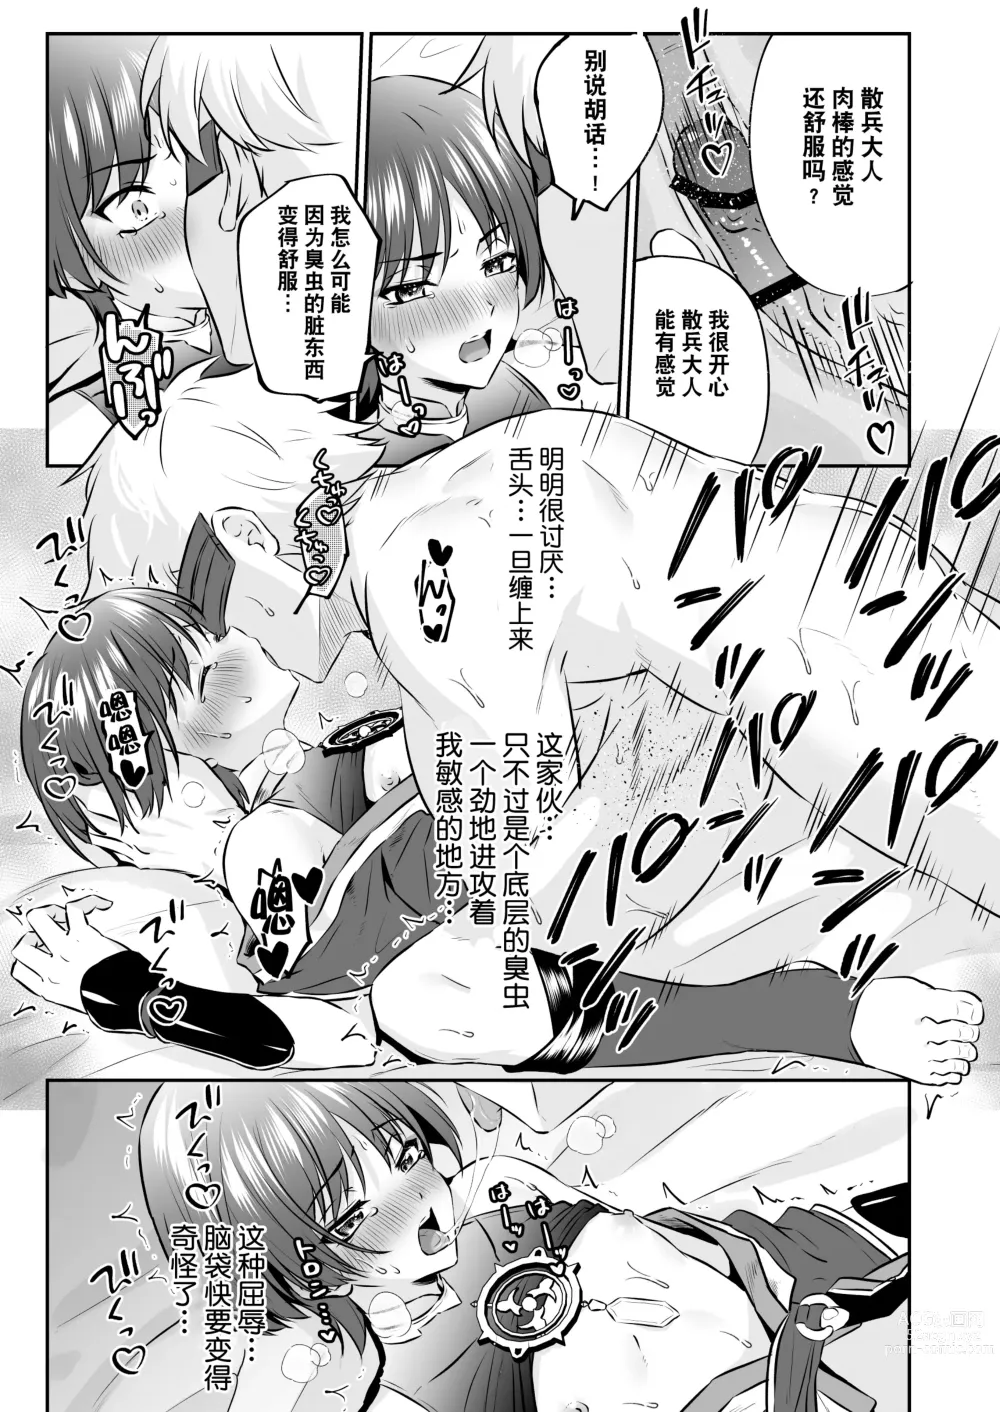 Page 22 of doujinshi  散兵大人哪怕是因为药物兴奋也不可能任由愚人众肆意摆布的吧